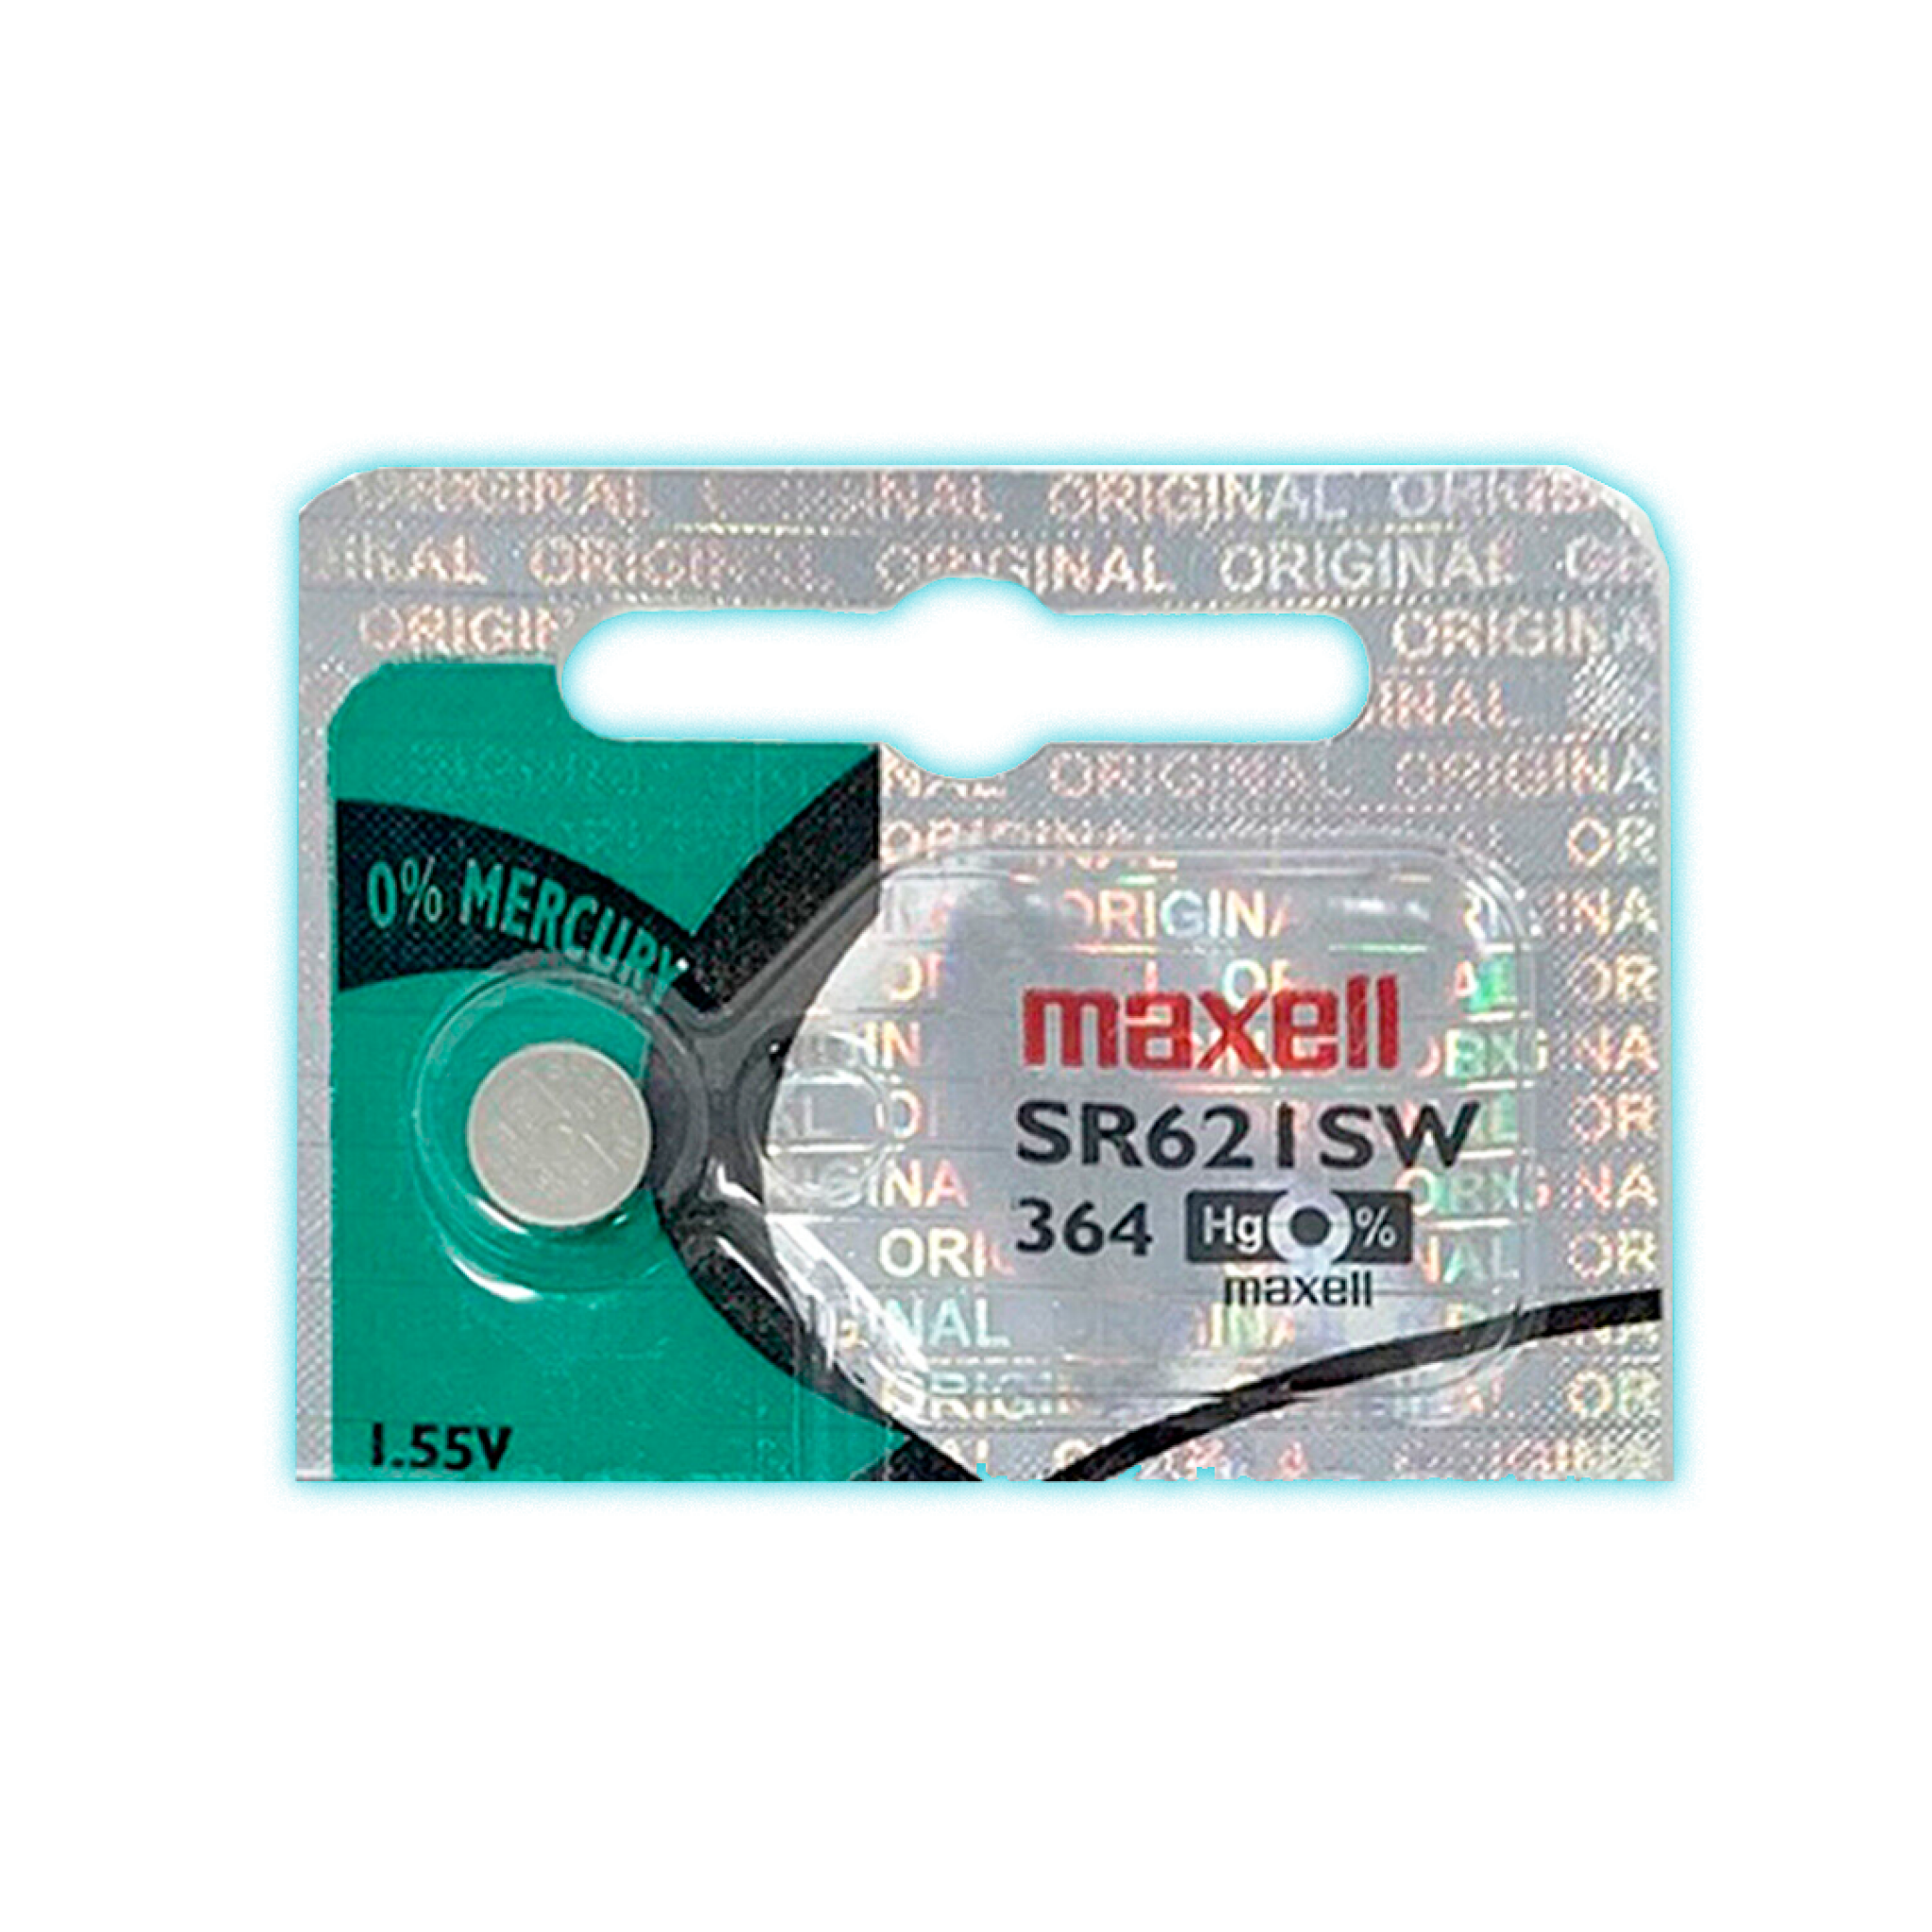 PILA MAXELL SR621SW 1.55V :: Serial Center